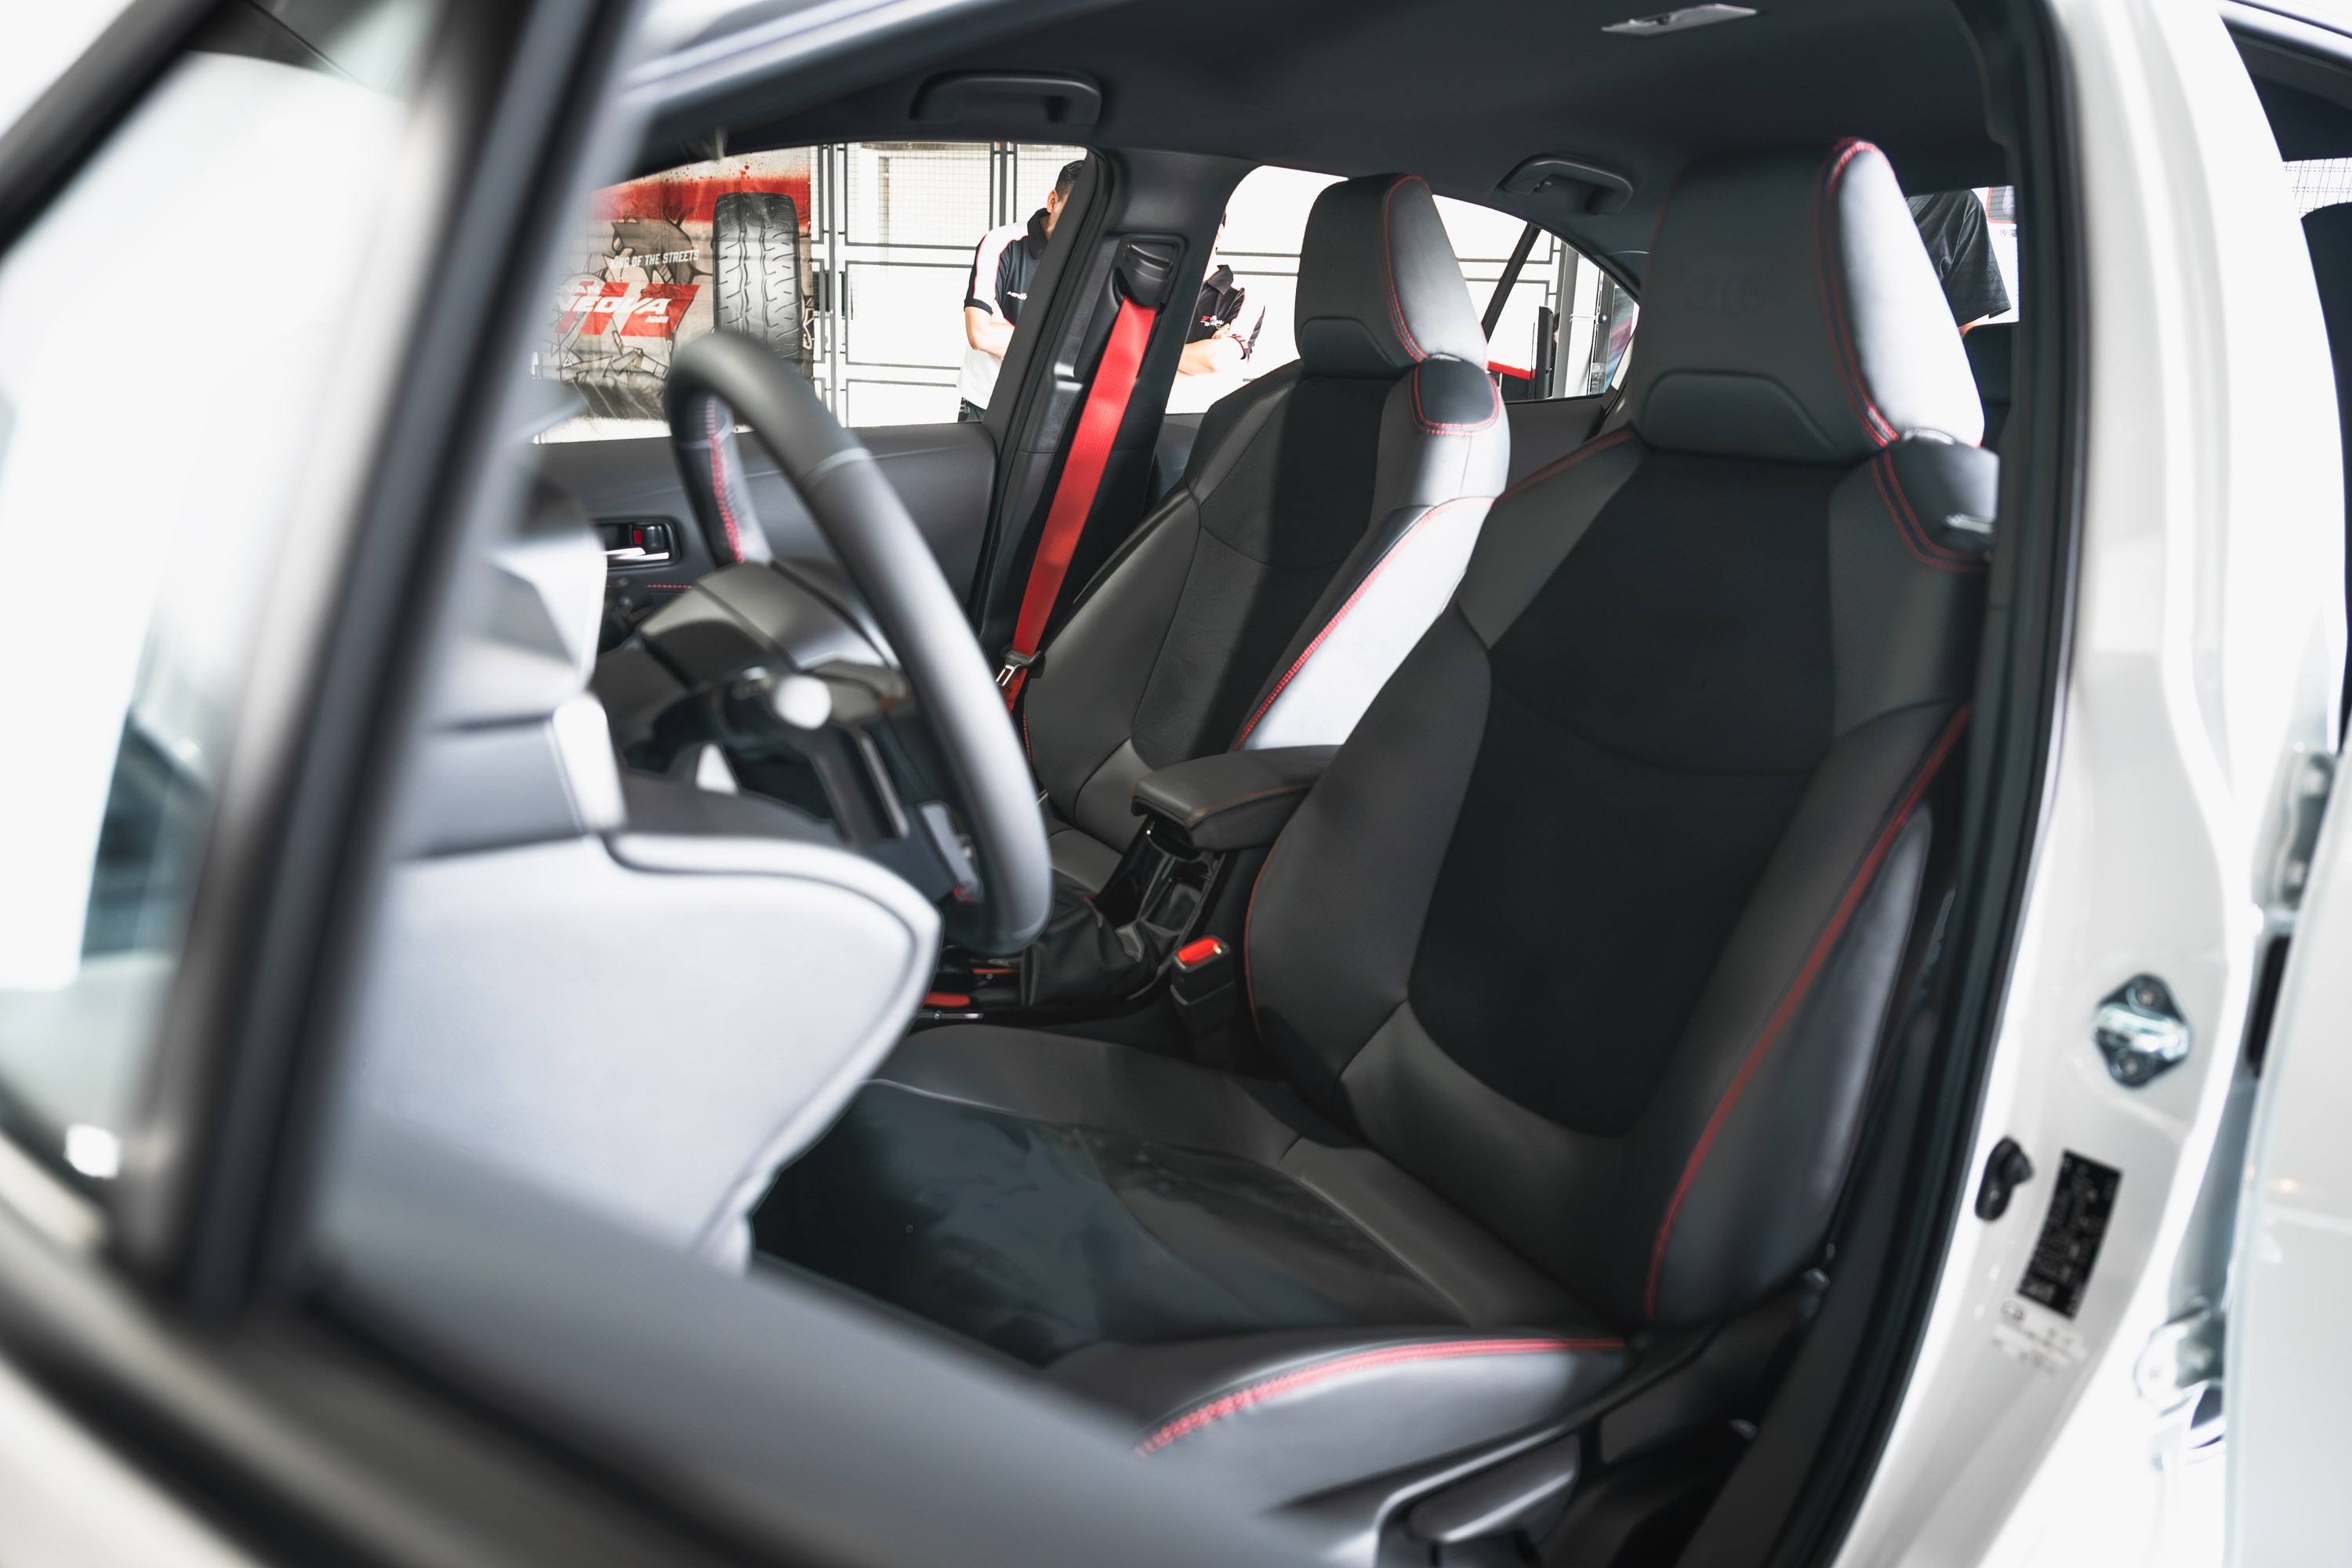 內裝依然為紅、黑配色，但是色塊配置與比重調整過後，質感大幅進步，特別是黑色頂棚，國產車少數採用此配置。